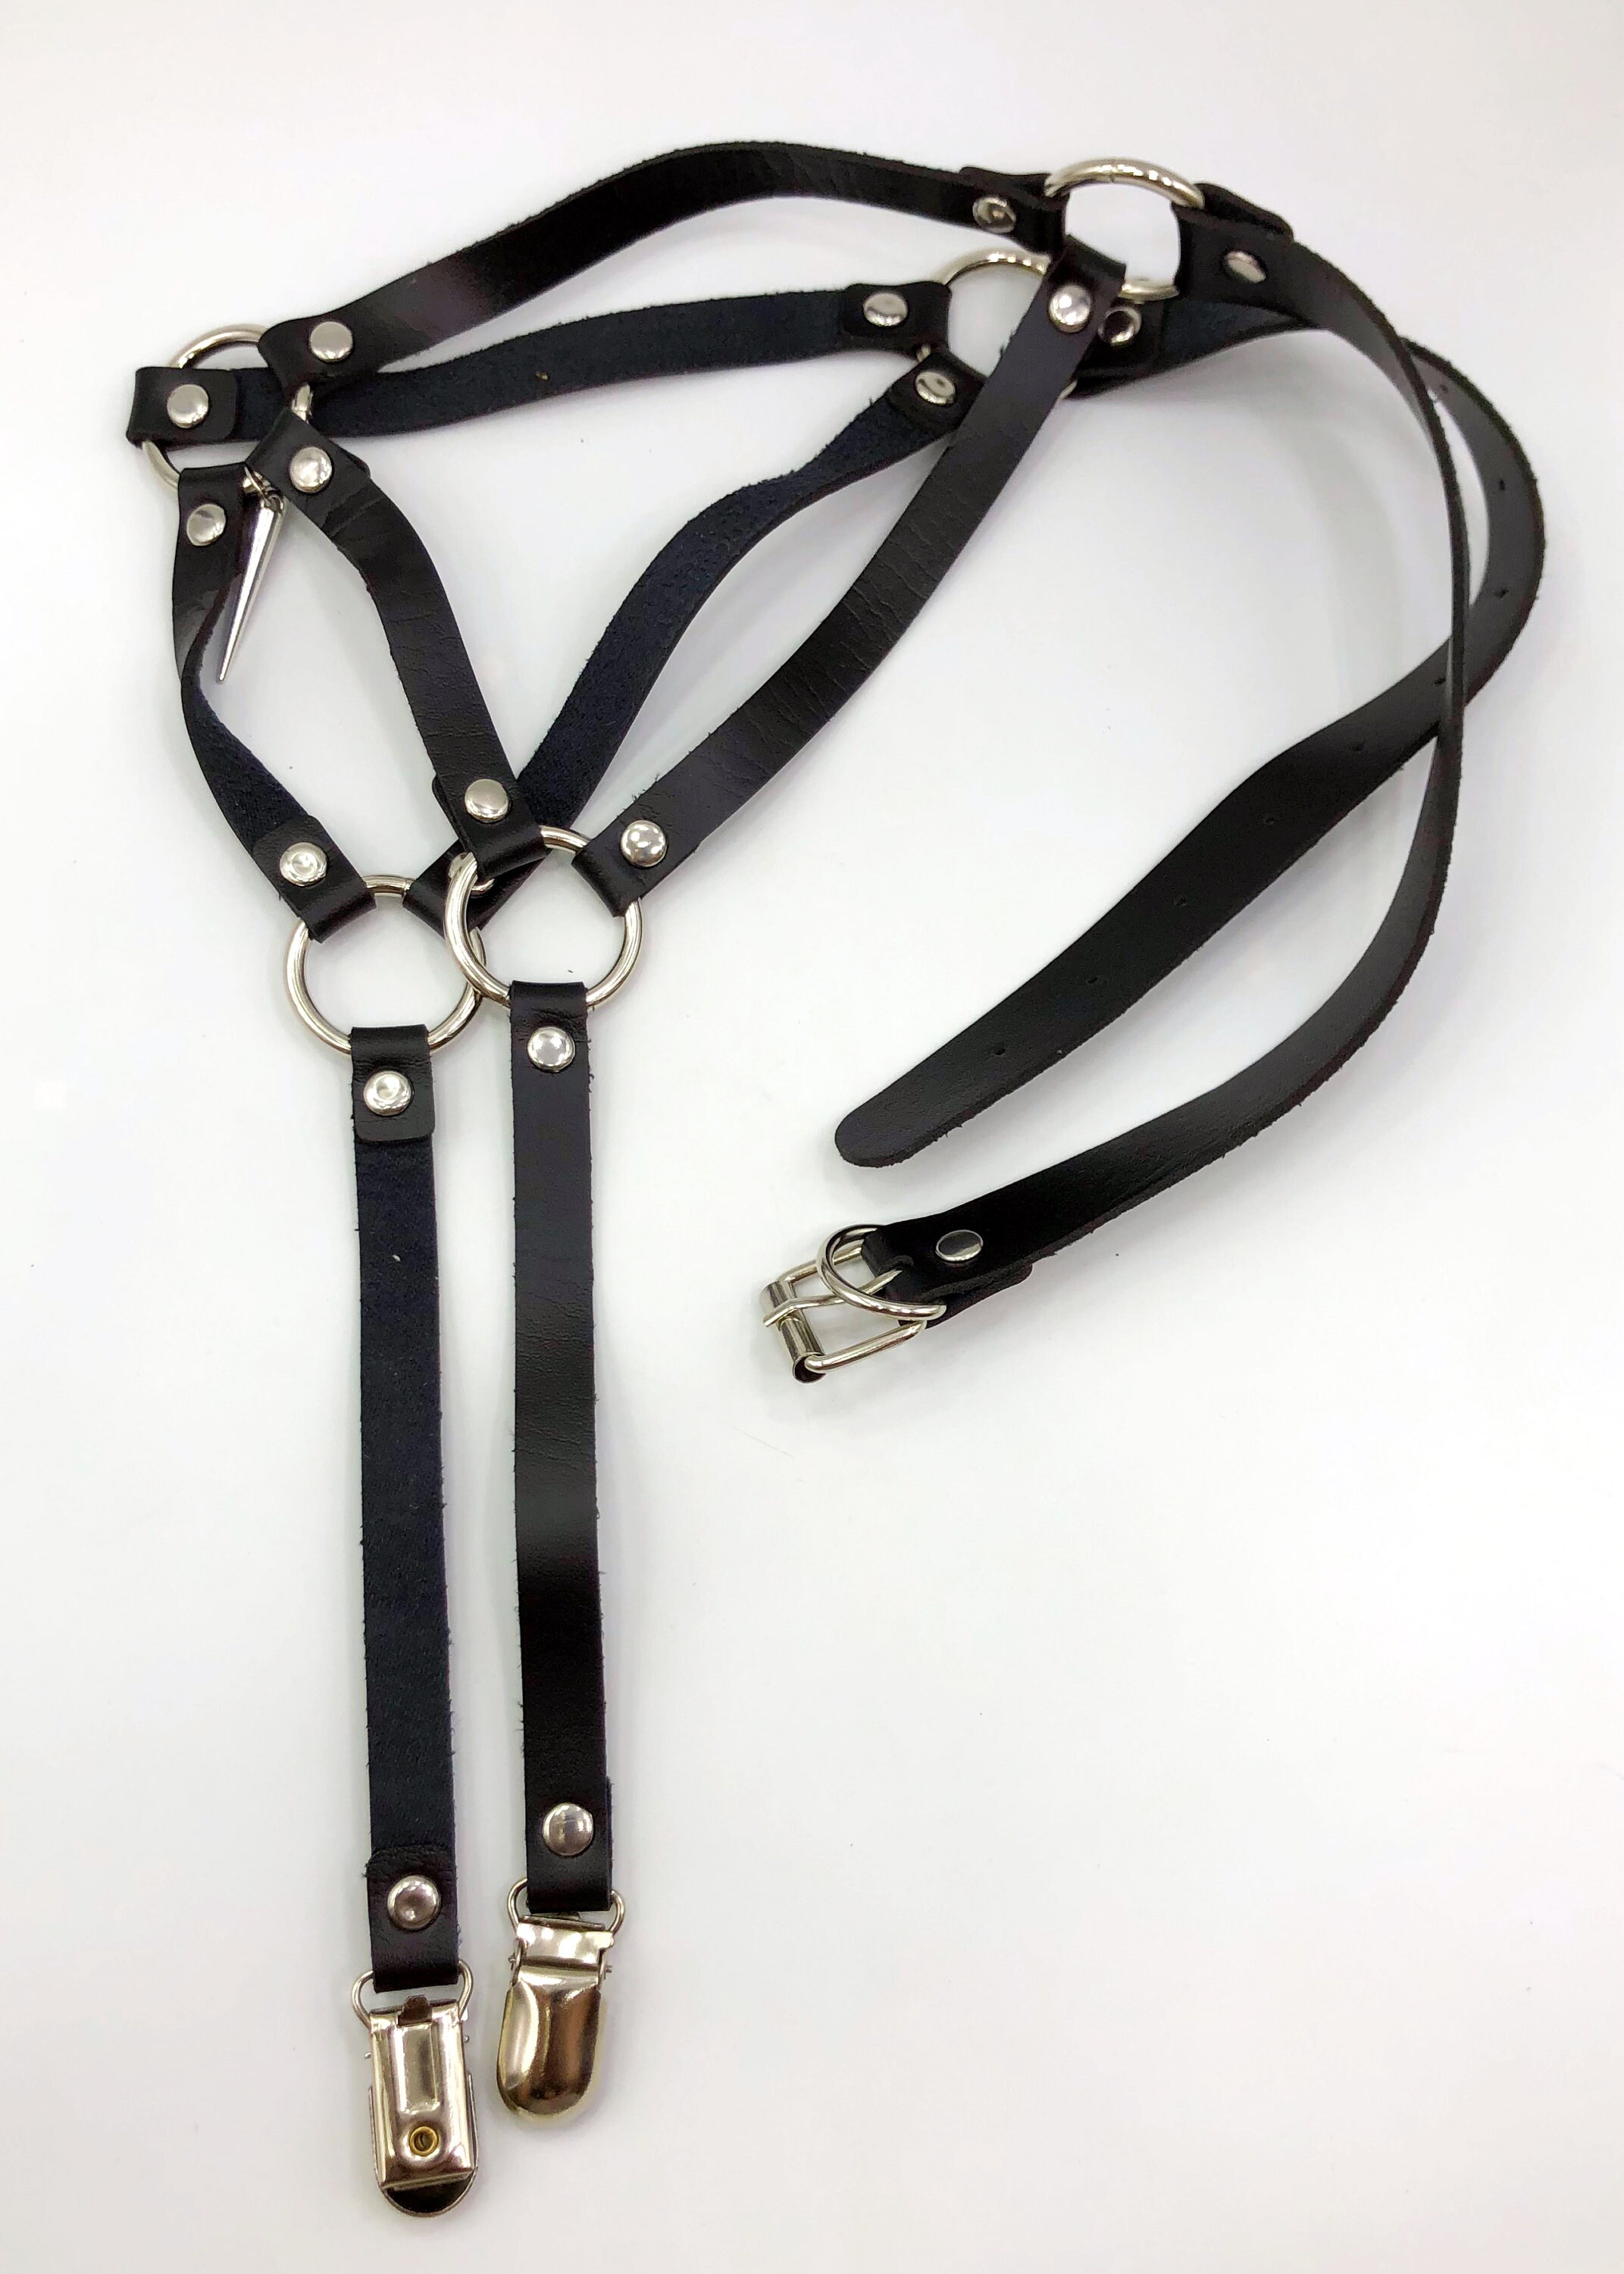 BDSM Garter Harness Belt With Large Spike Charm | Etsy